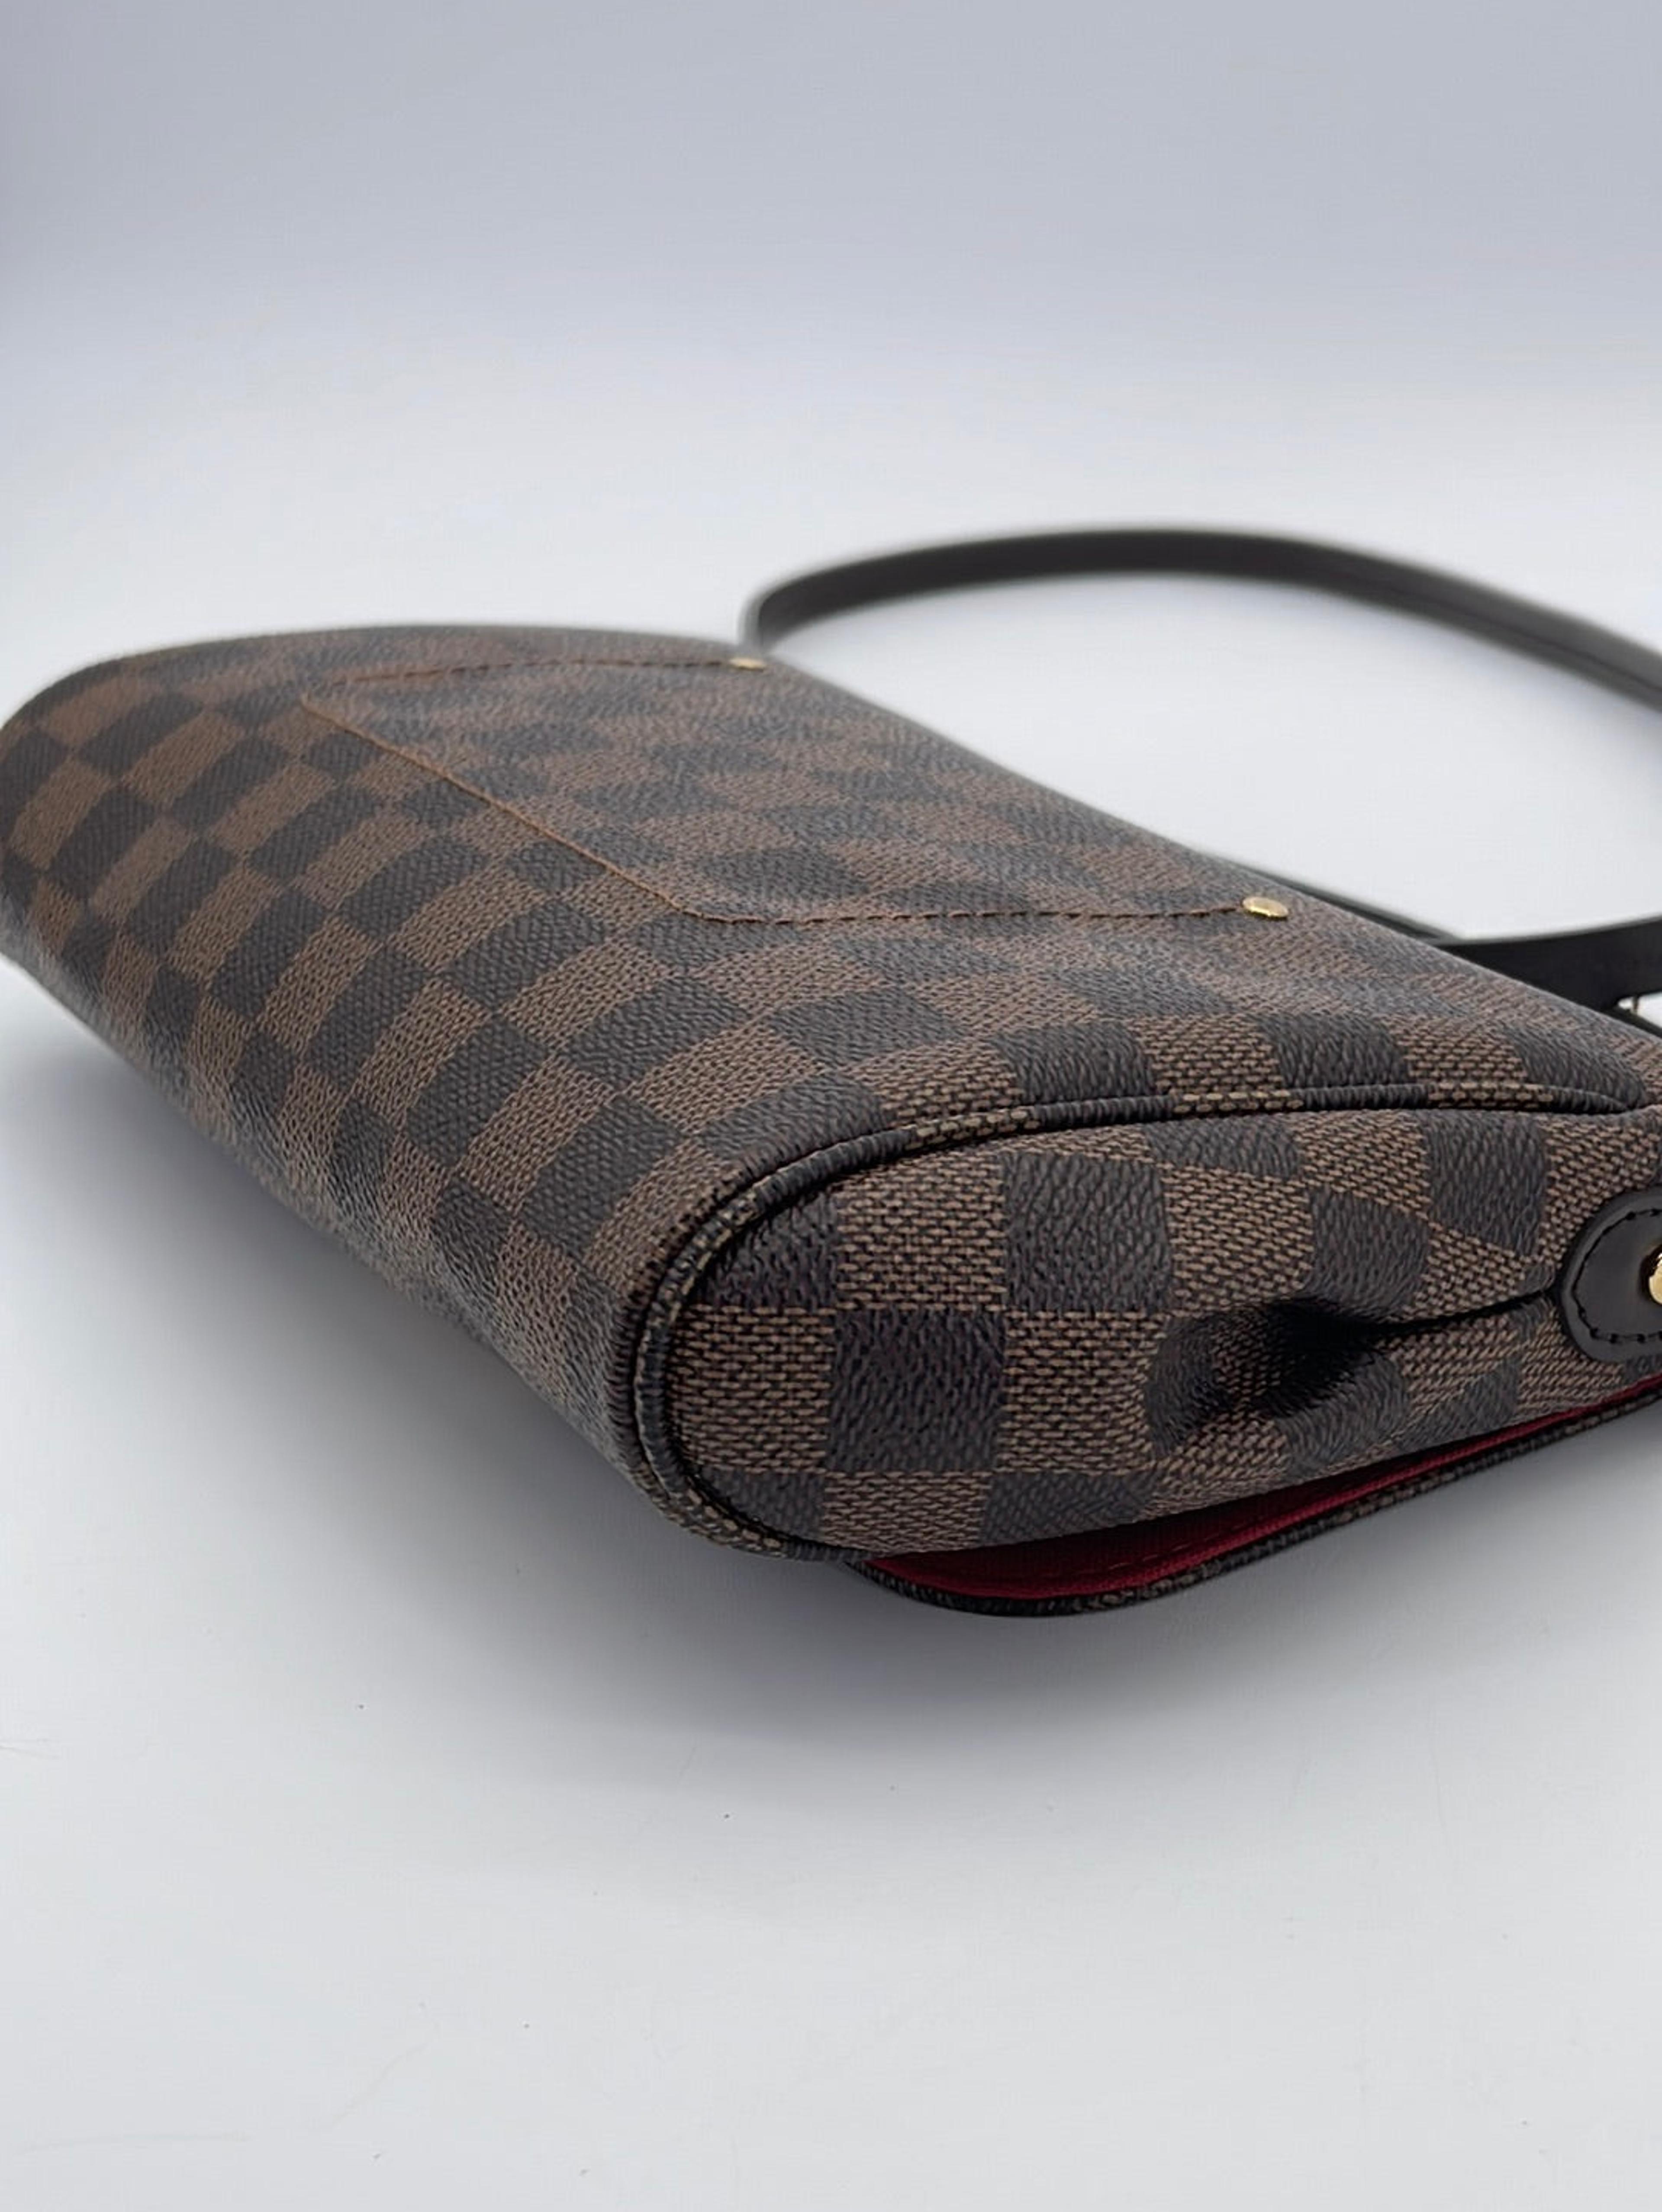 Louis Vuitton, Bags, Louis Vuitton Favorite Mm Damier Ebene Authentic  Discontinued